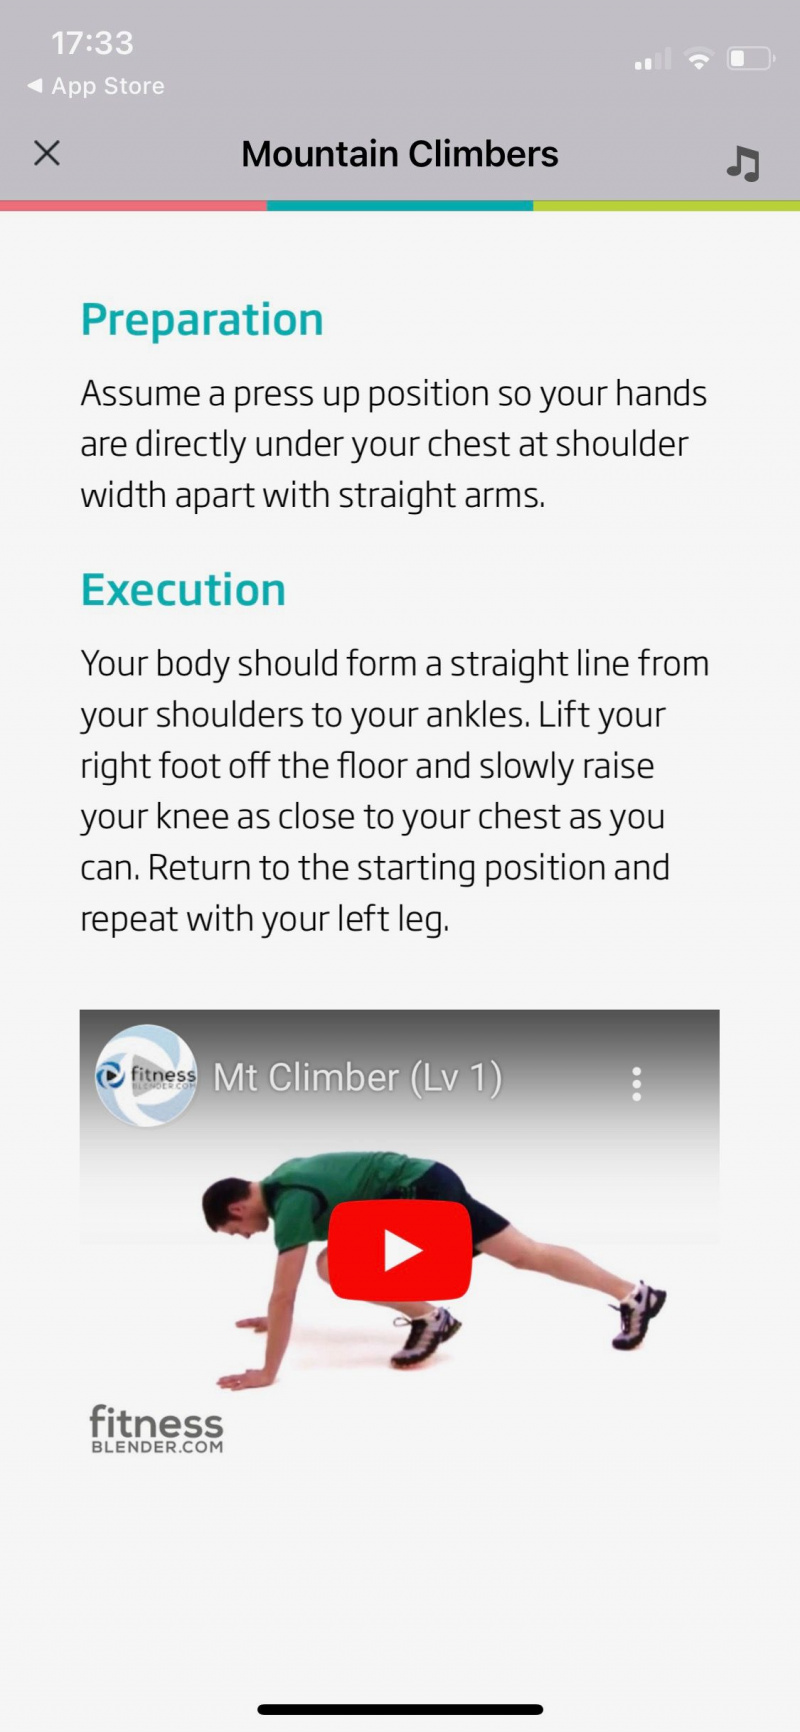   Snímka obrazovky 7-minútového tréningu od C25K zobrazujúca obrazovku s pokynmi na cvičenie